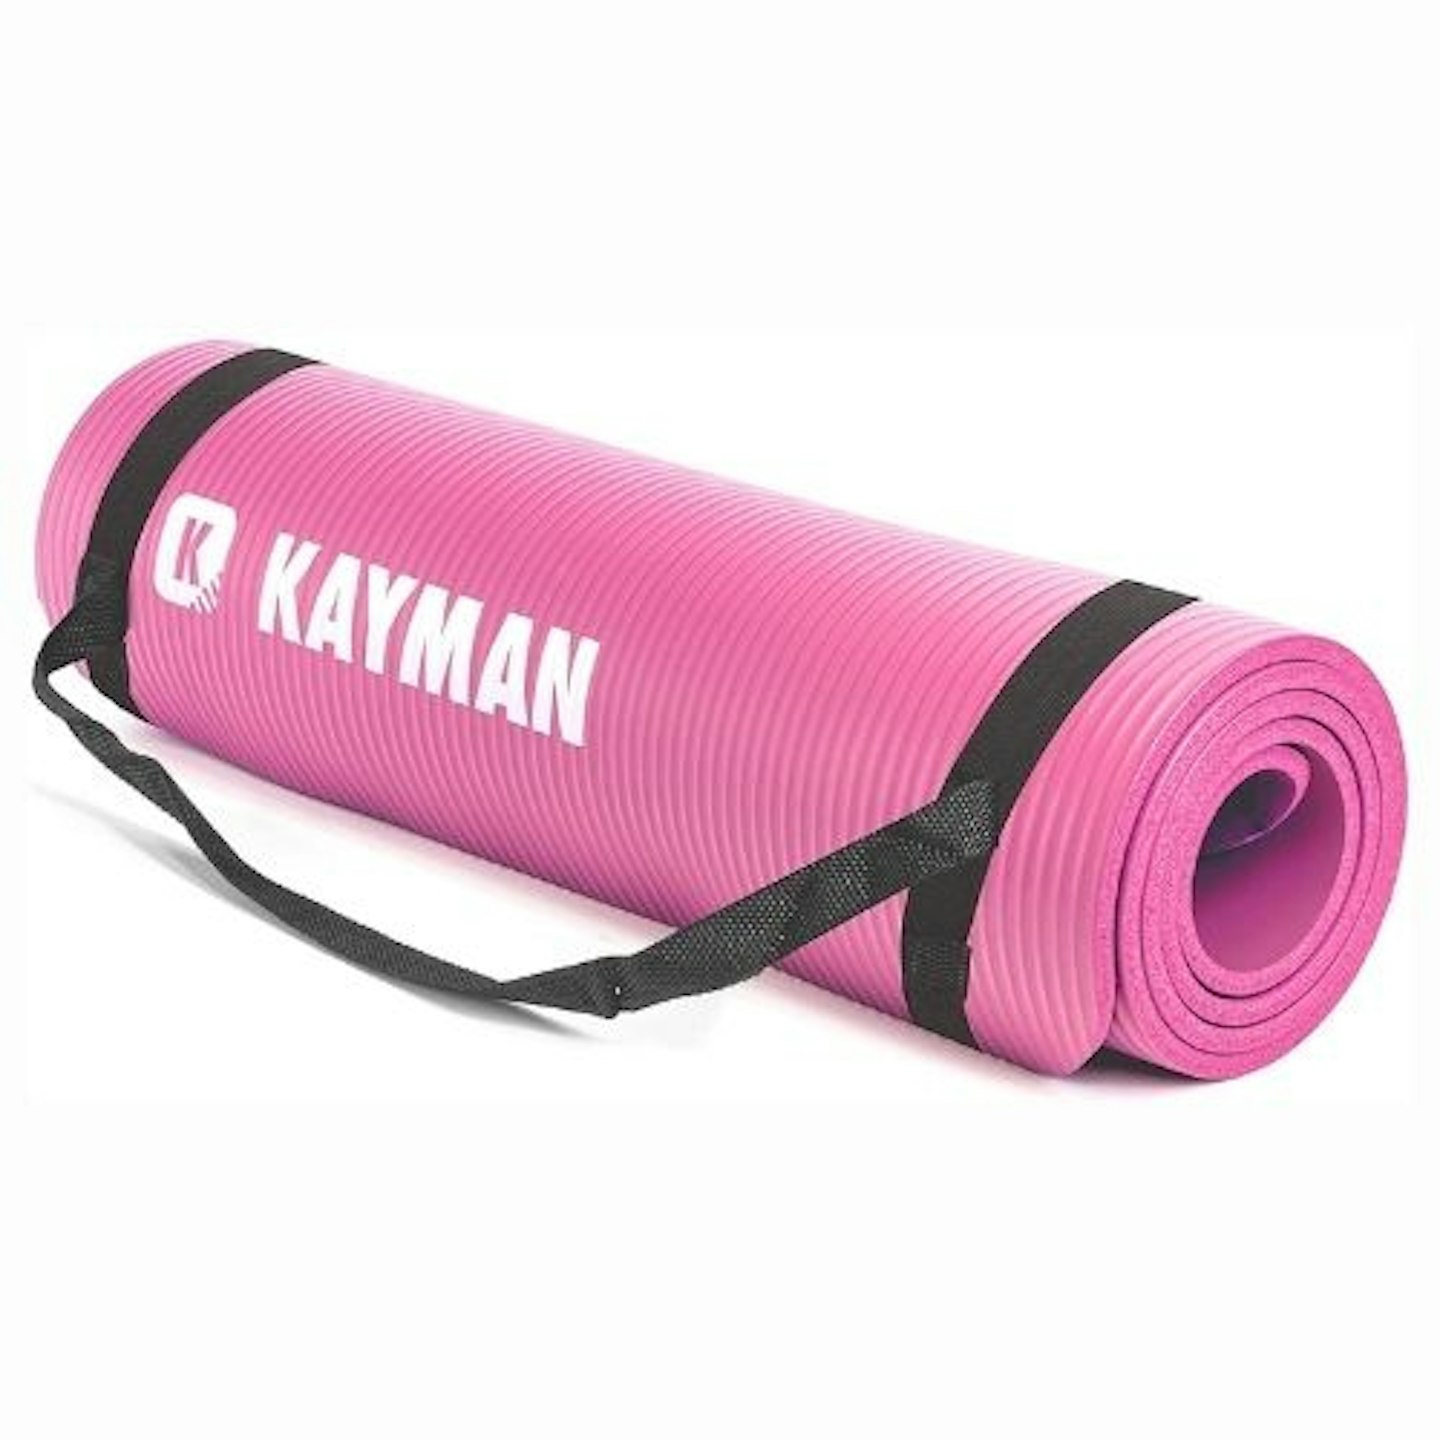 Kayman Multi-Purpose Exercise Mat